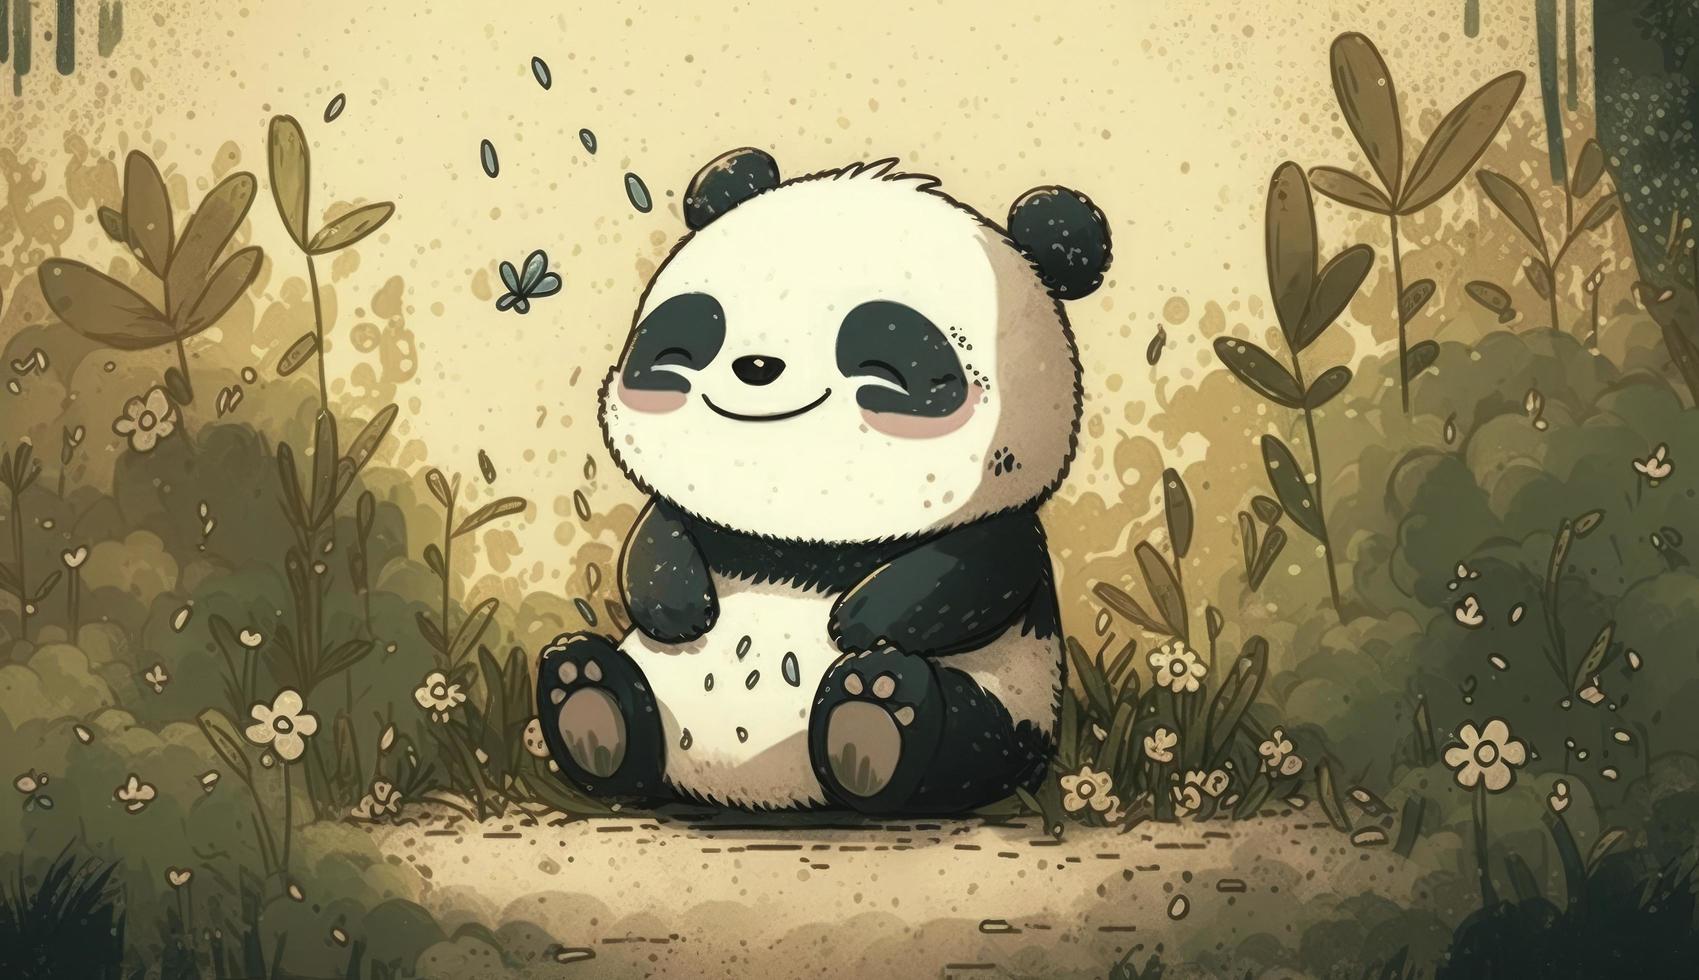 mullido linda panda bebé en el bosque en riendo felizmente, estilo, animal, panda bebé, generar ai foto